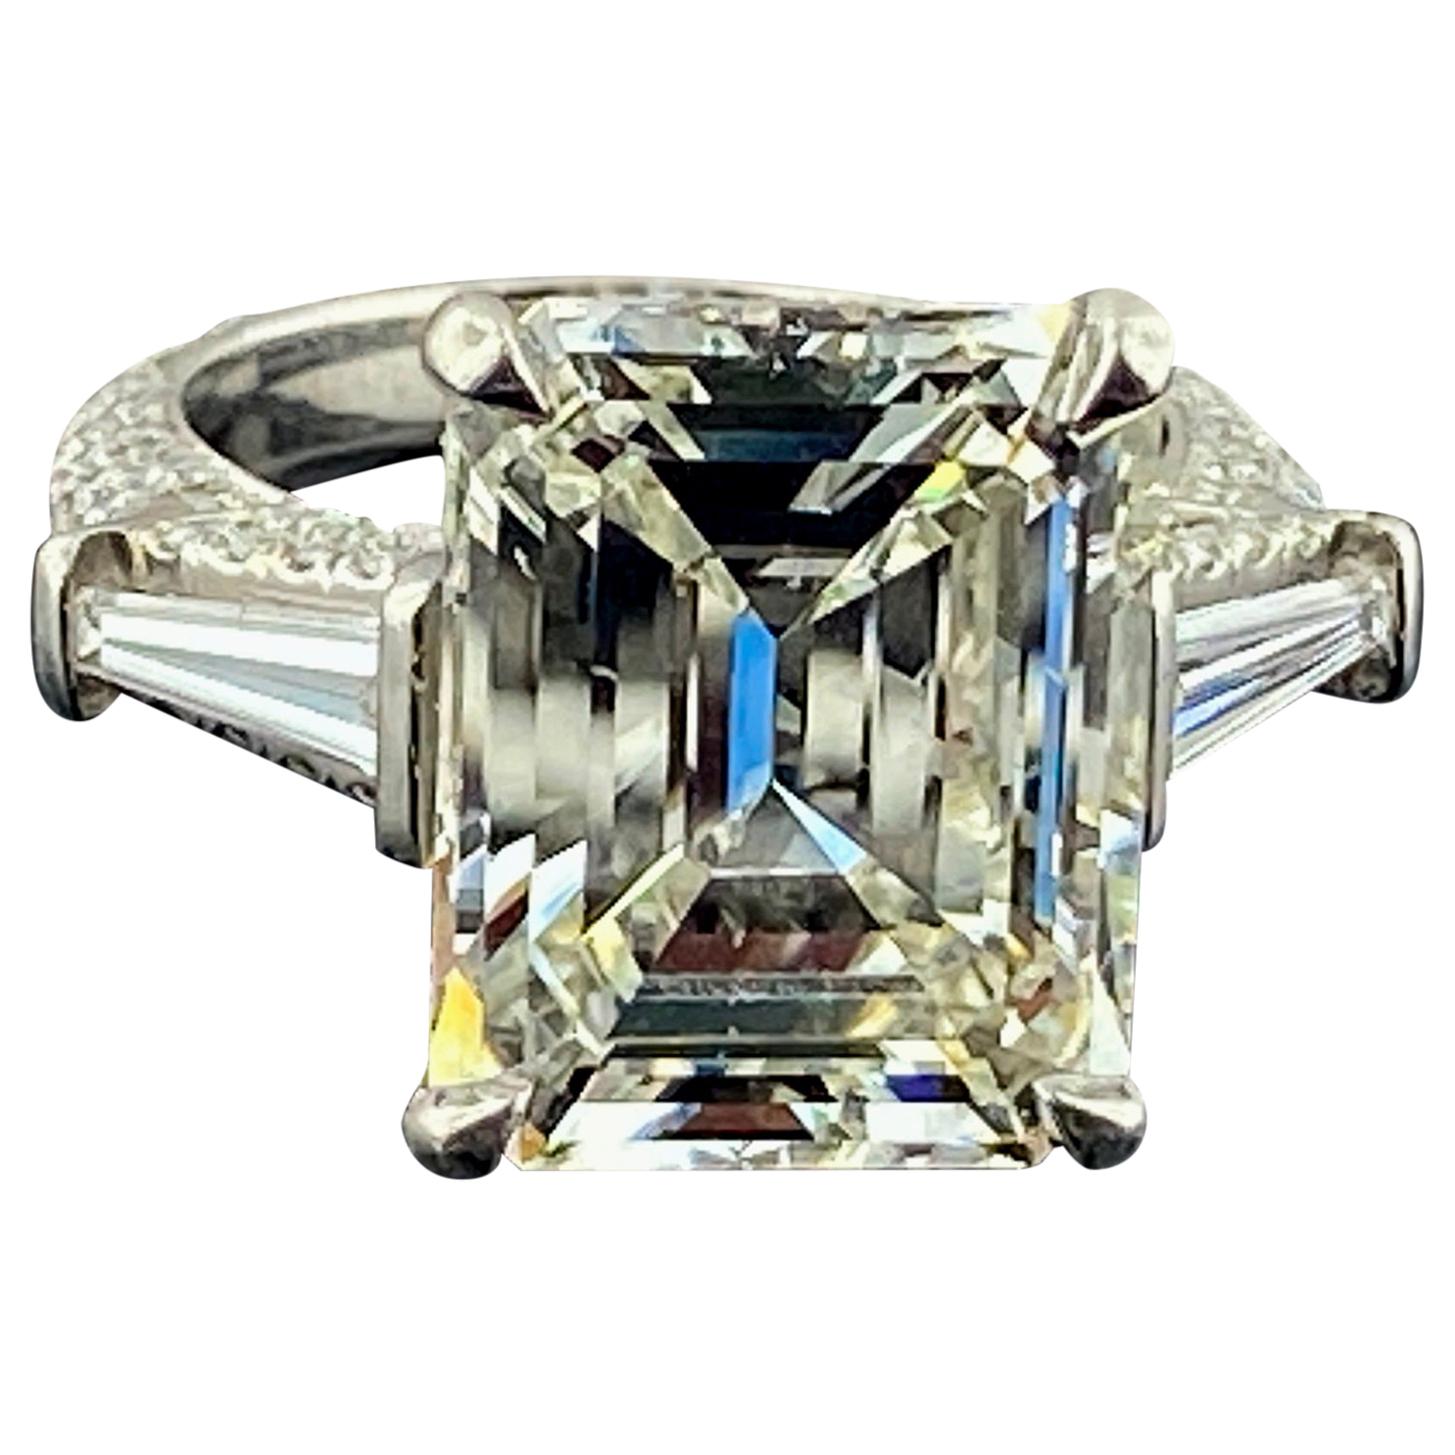 Platinum 9.25 Carat Emerald Cut Diamond Ring